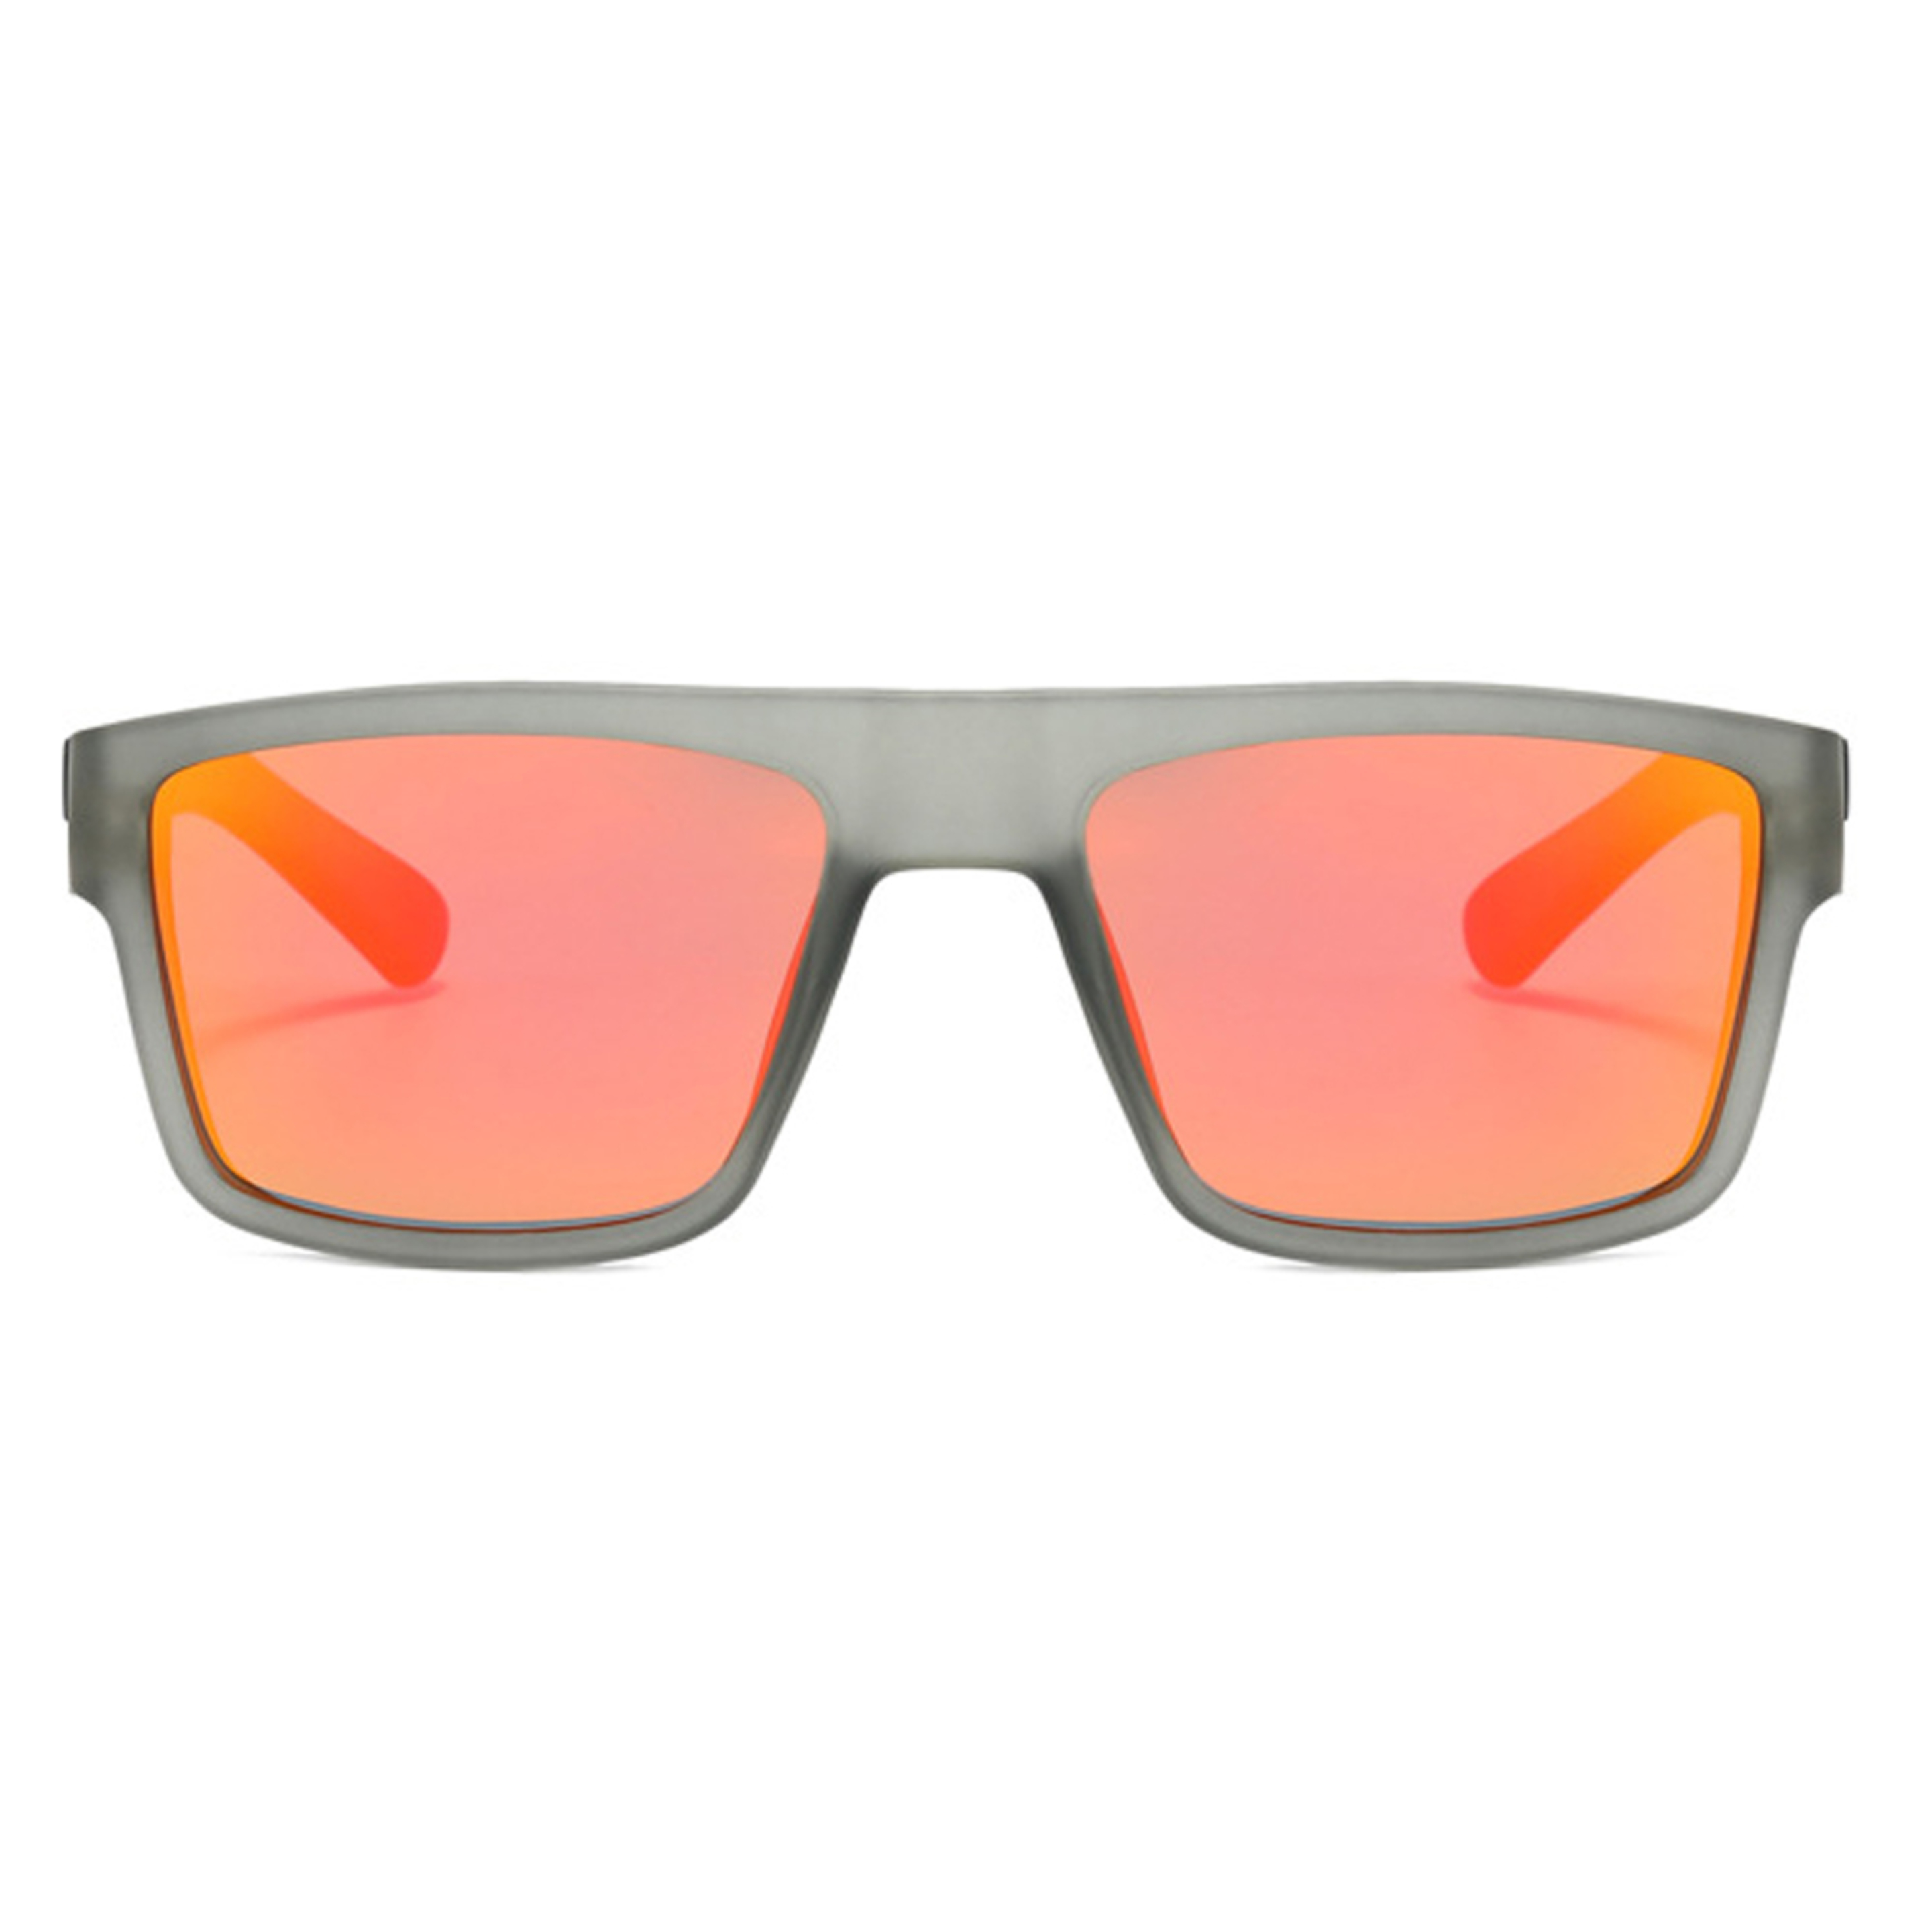 Gafas De Sol Fluor | 918-3 - Transparente - Cuadrada  MKP